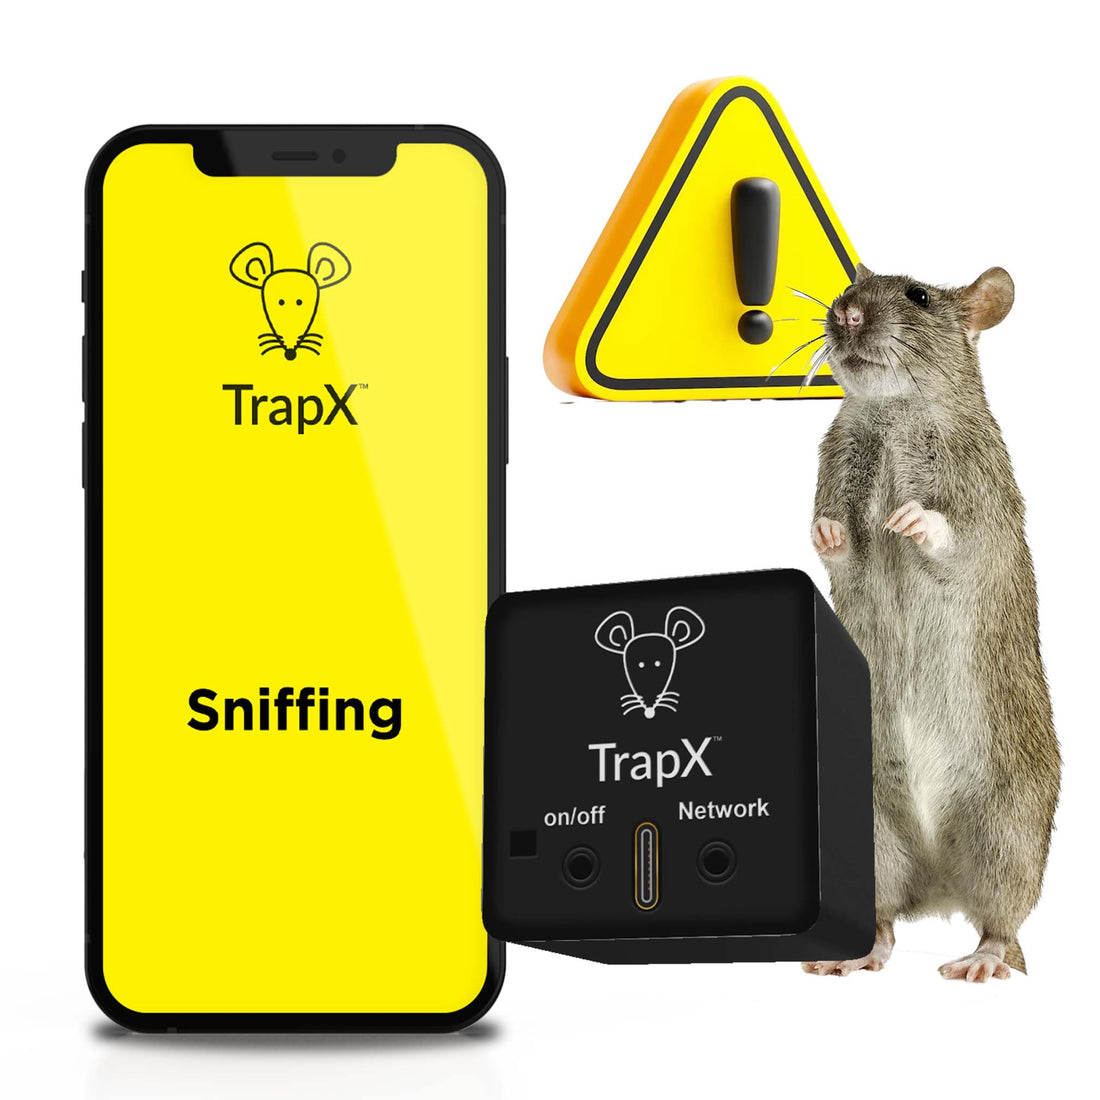 mouse trap vs poison